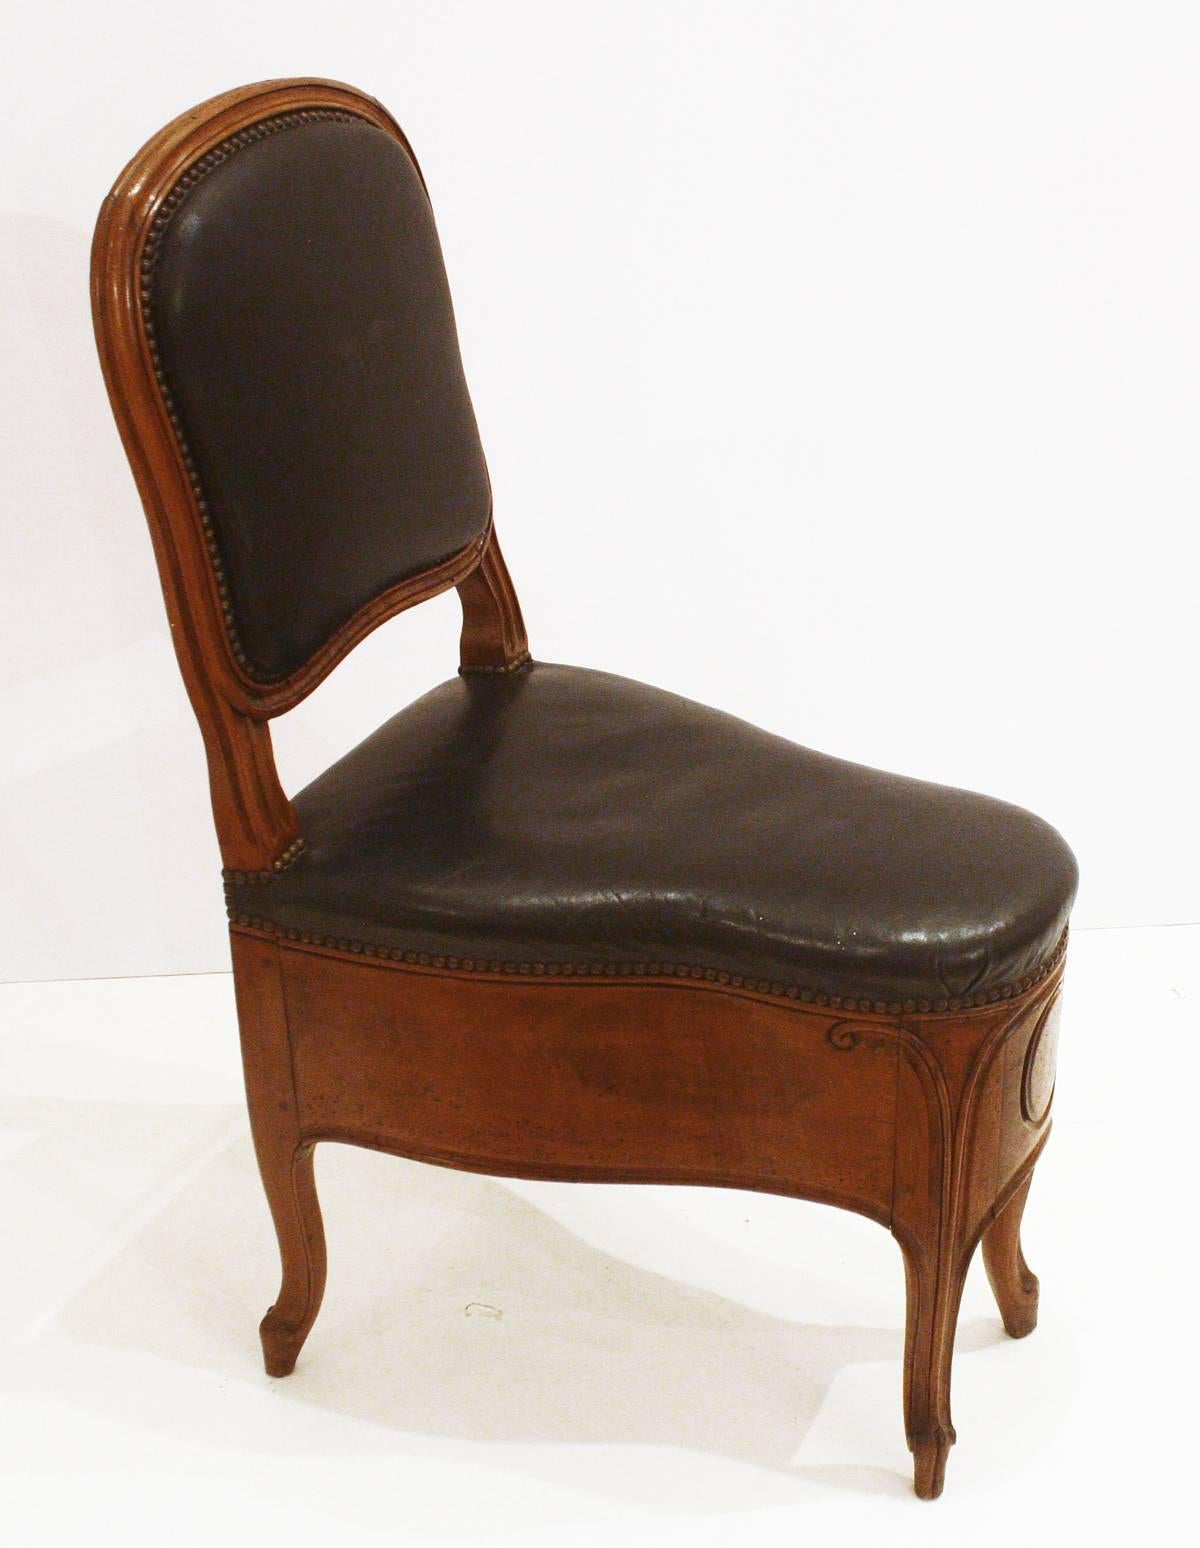 un beau bidet / chaise en bois fruitier français Louis XV sculpté, maintenant fixé dans une position fermée avec un siège et un dossier en cuir noir rembourré, garniture de tête de clou, signé / estampillé par   fabricant, France, milieu du 18e